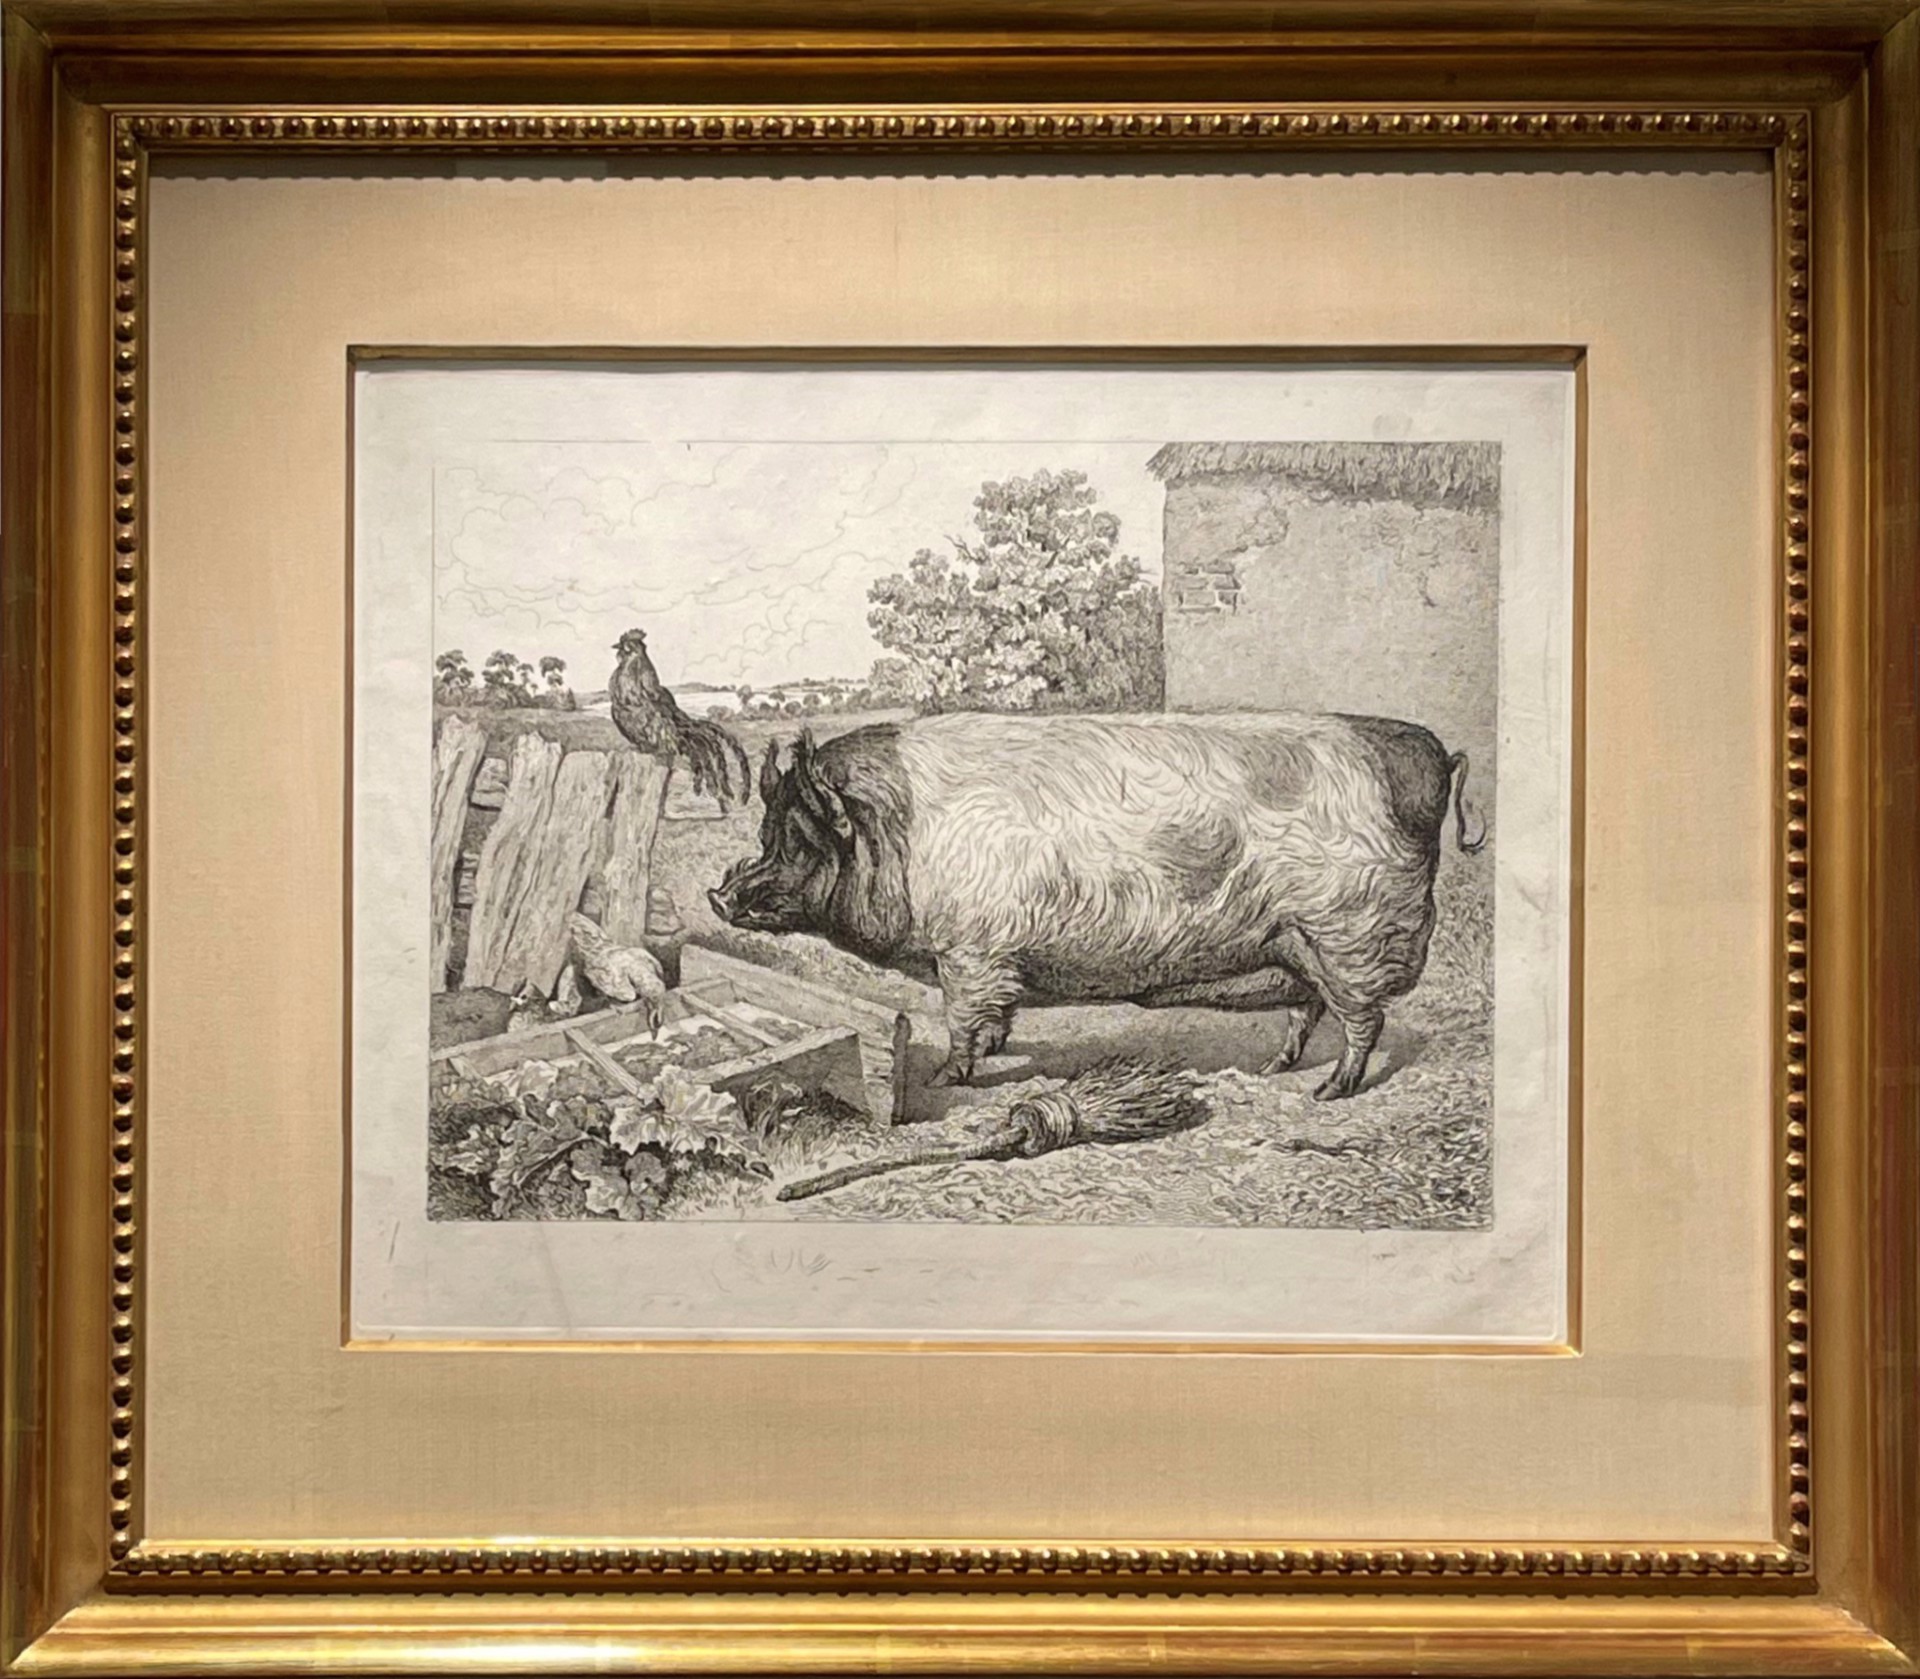 A British Boar, 1818 by Sir Edwin Landseer